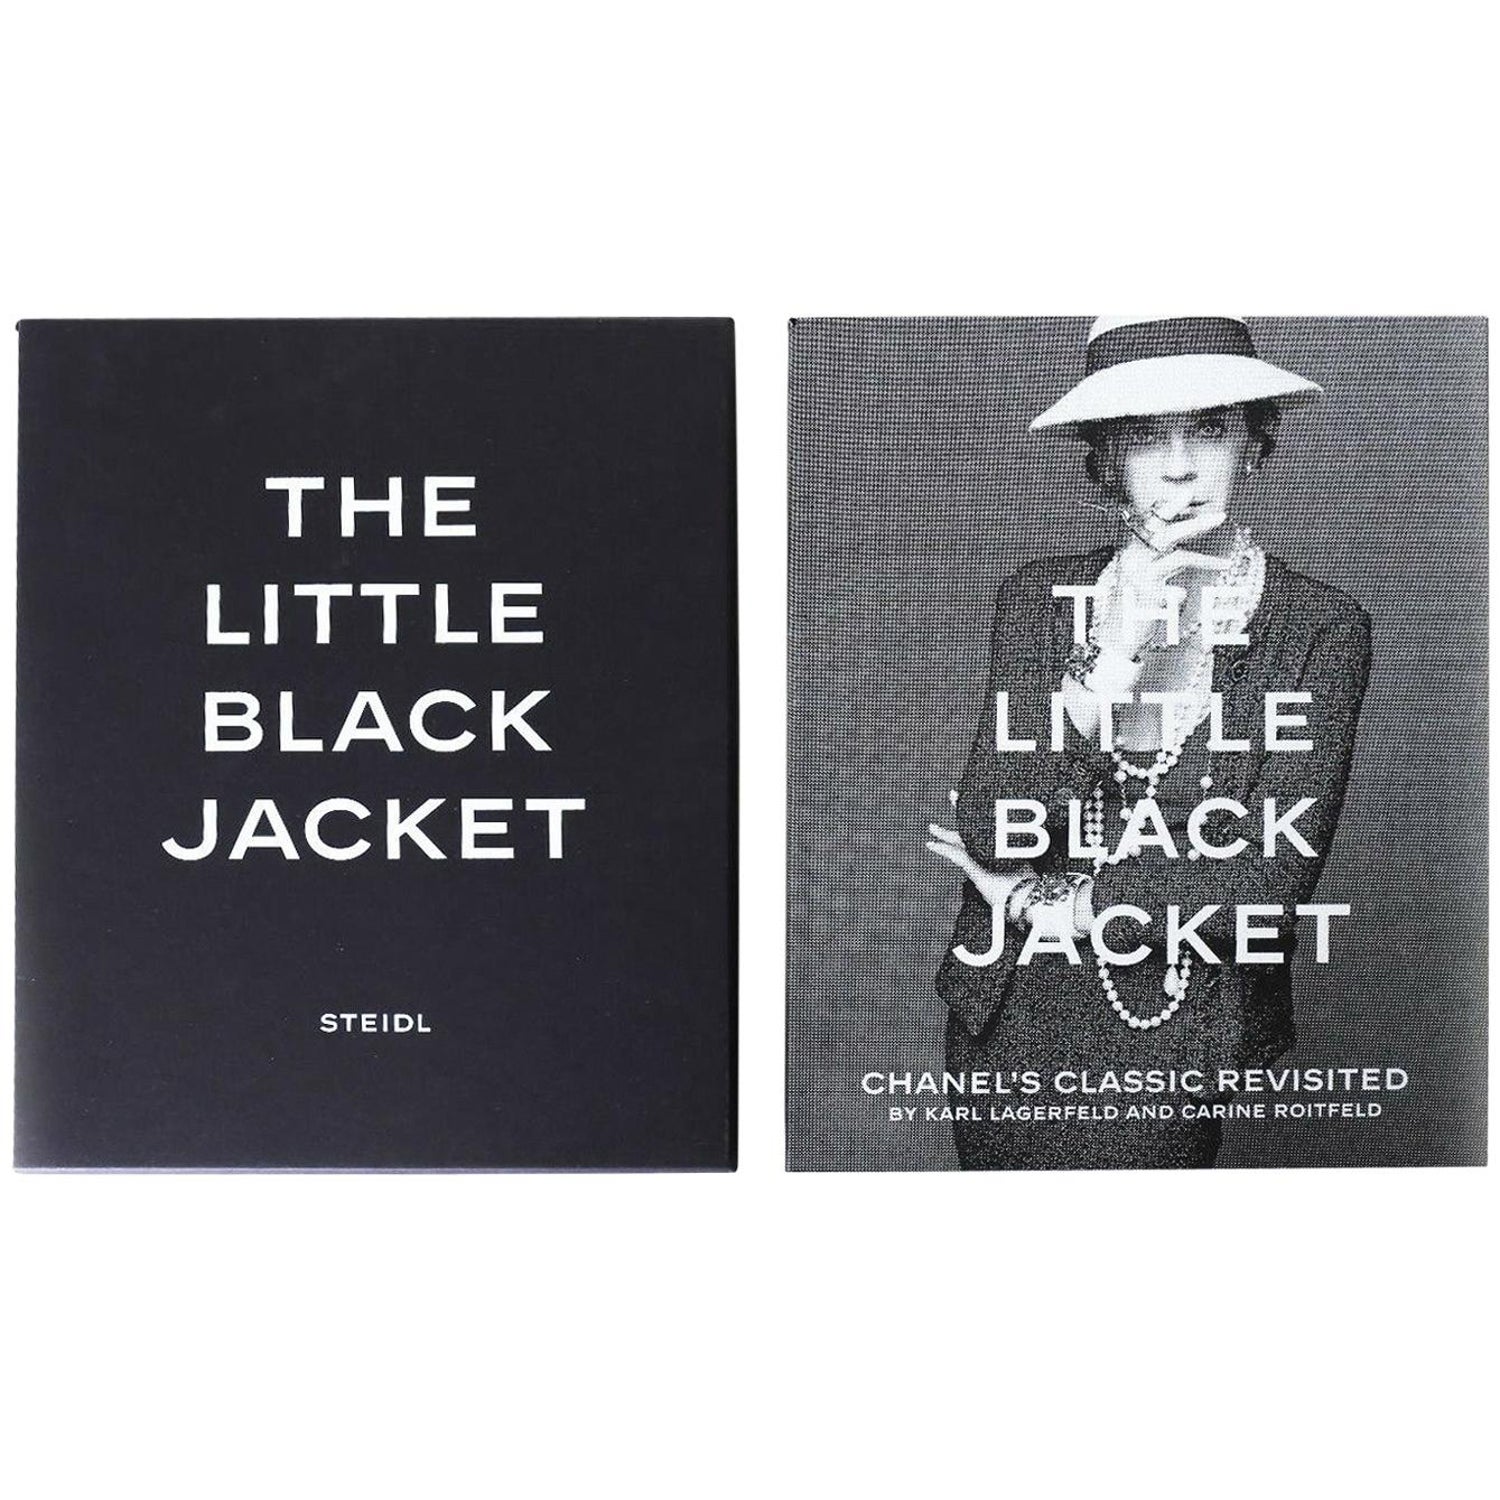 Chanel Little Black Jacket - 4 For Sale on 1stDibs | chanel little black  jacket price, black chanel style jacket, iconic chanel little black jacket